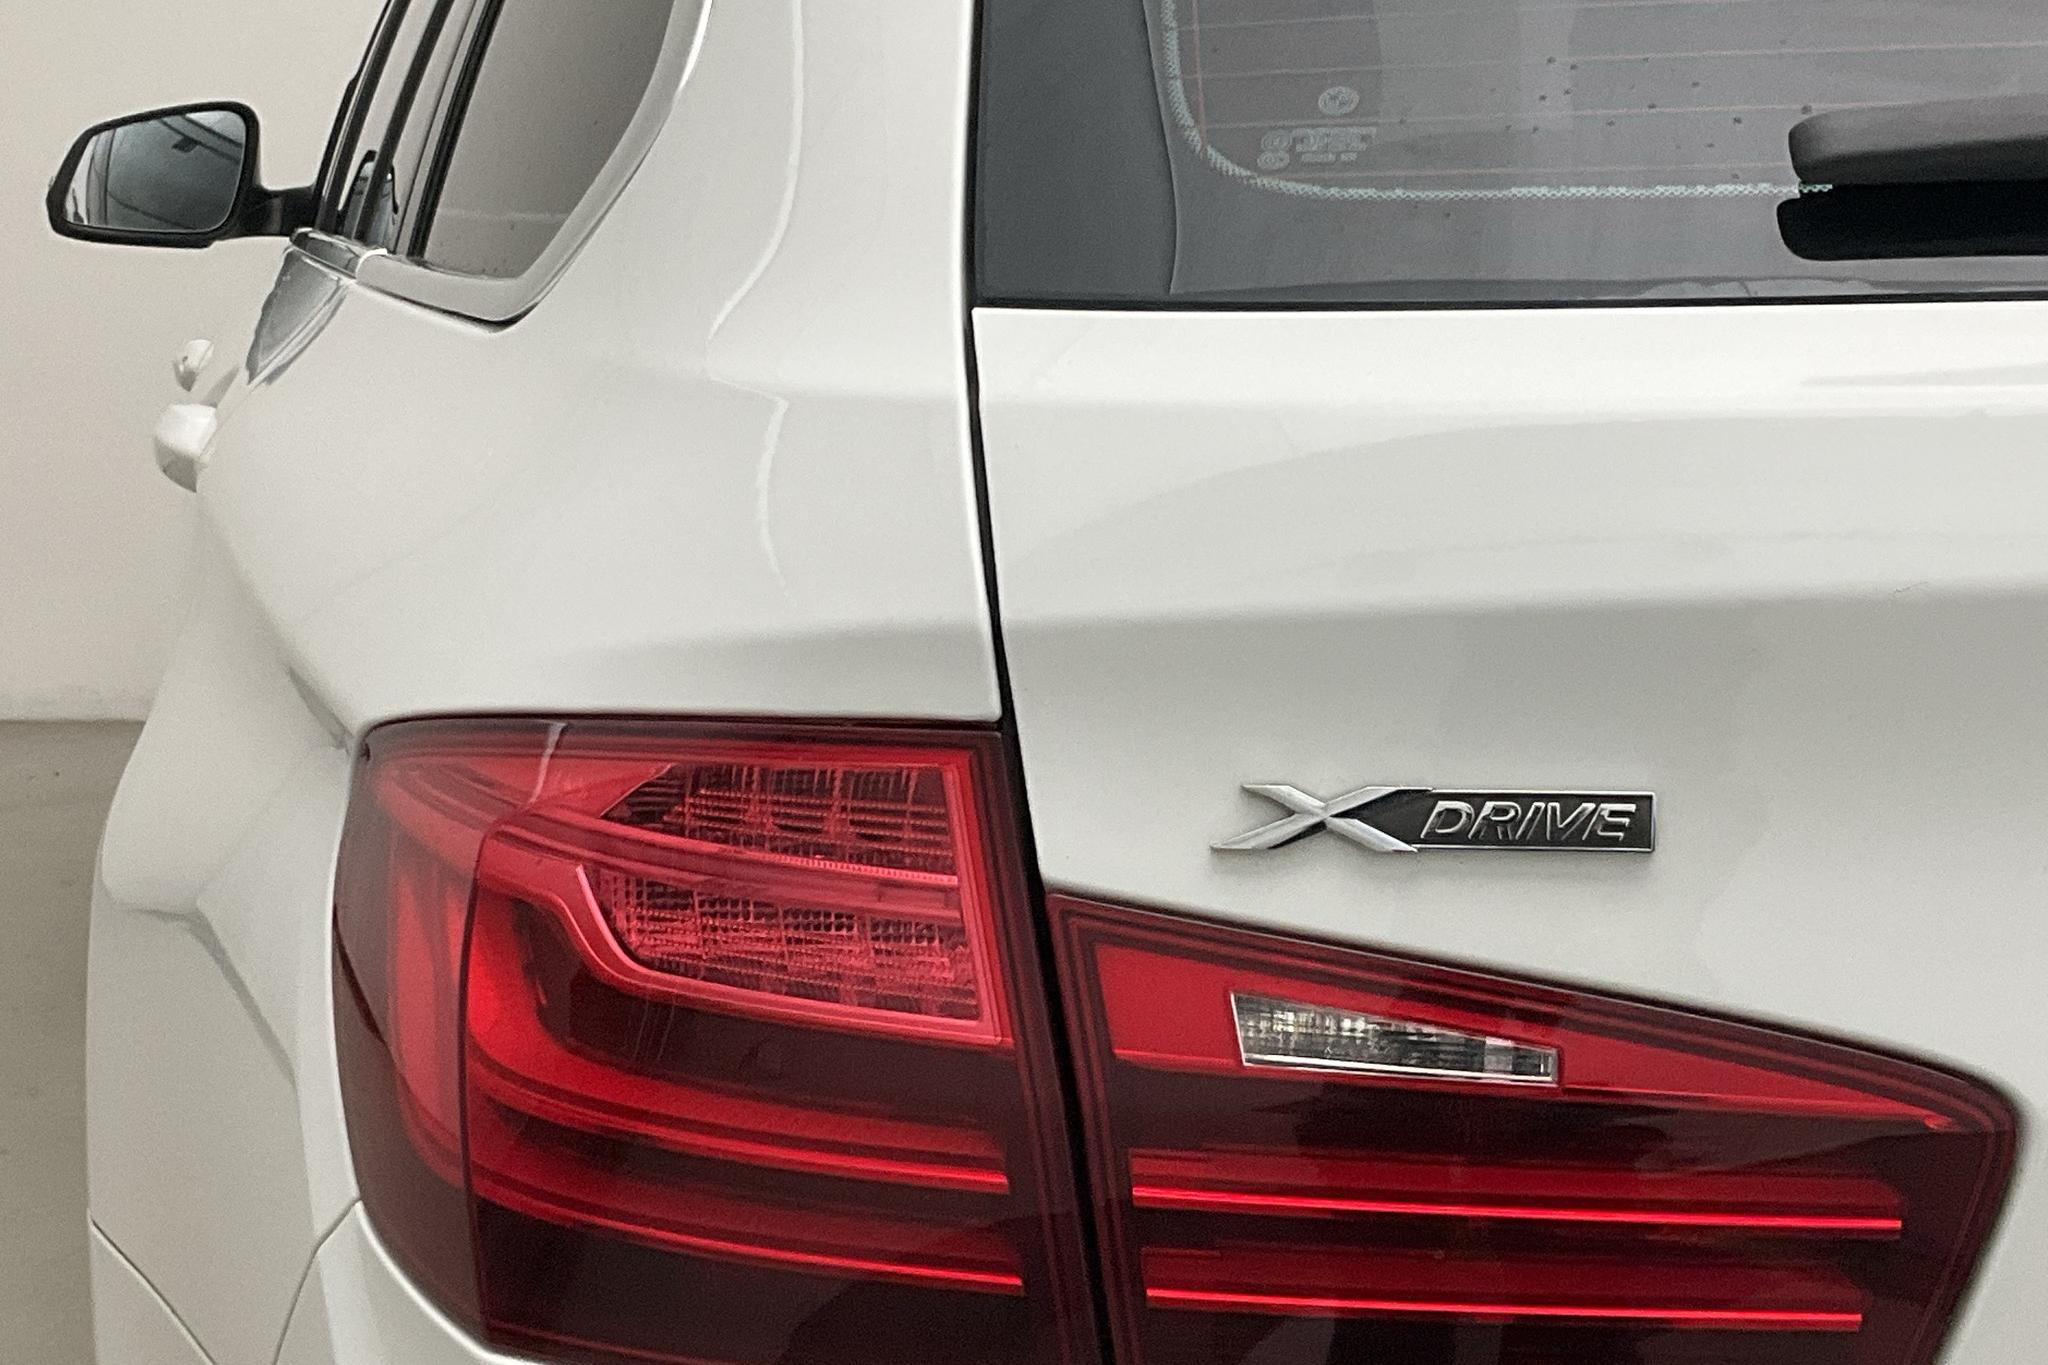 BMW 520d xDrive Touring, F11 (190hk) - 123 020 km - Automatyczna - biały - 2017